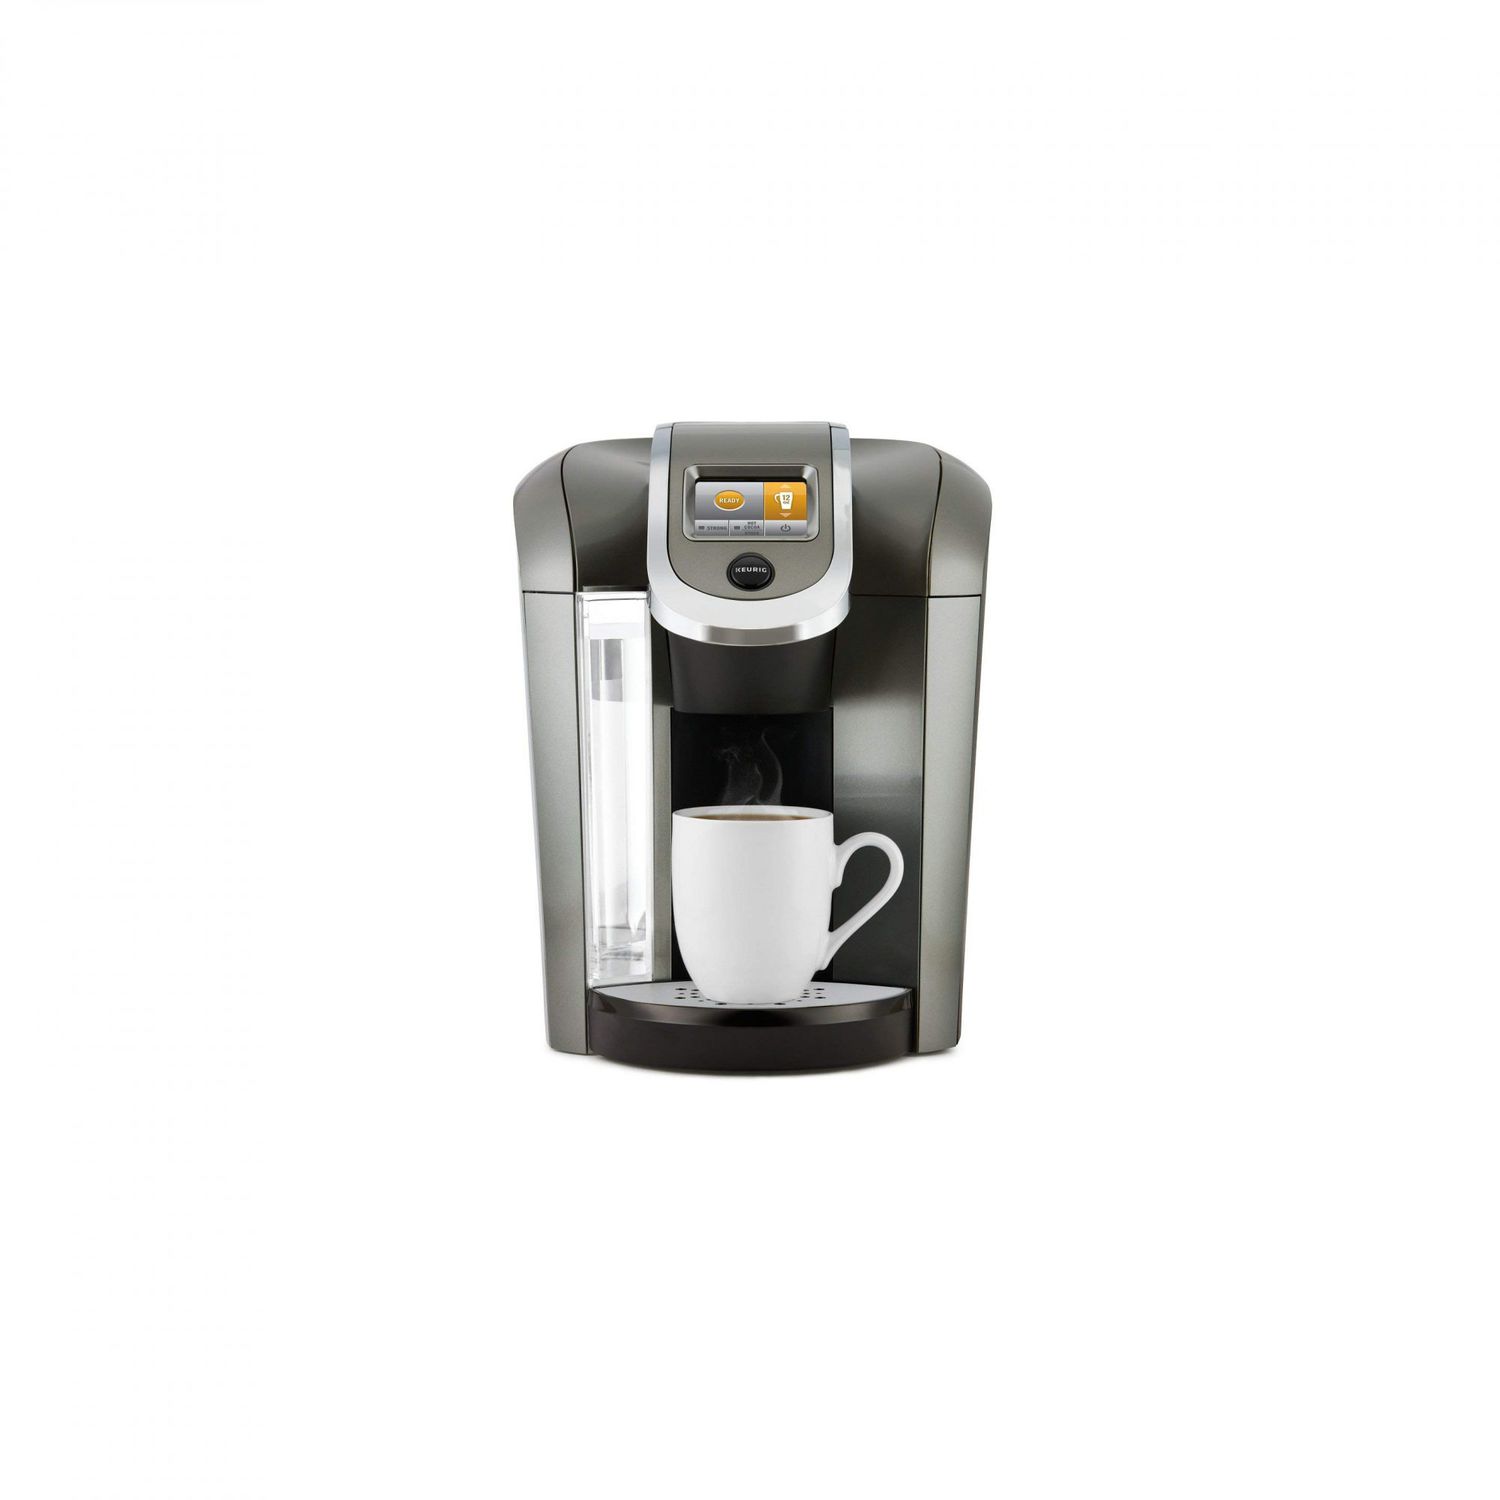 Best Single Serve Coffee Makers Keurig Nespresso Mr Coffee And More Single Serve Coffee Makers To Buy Real Simple